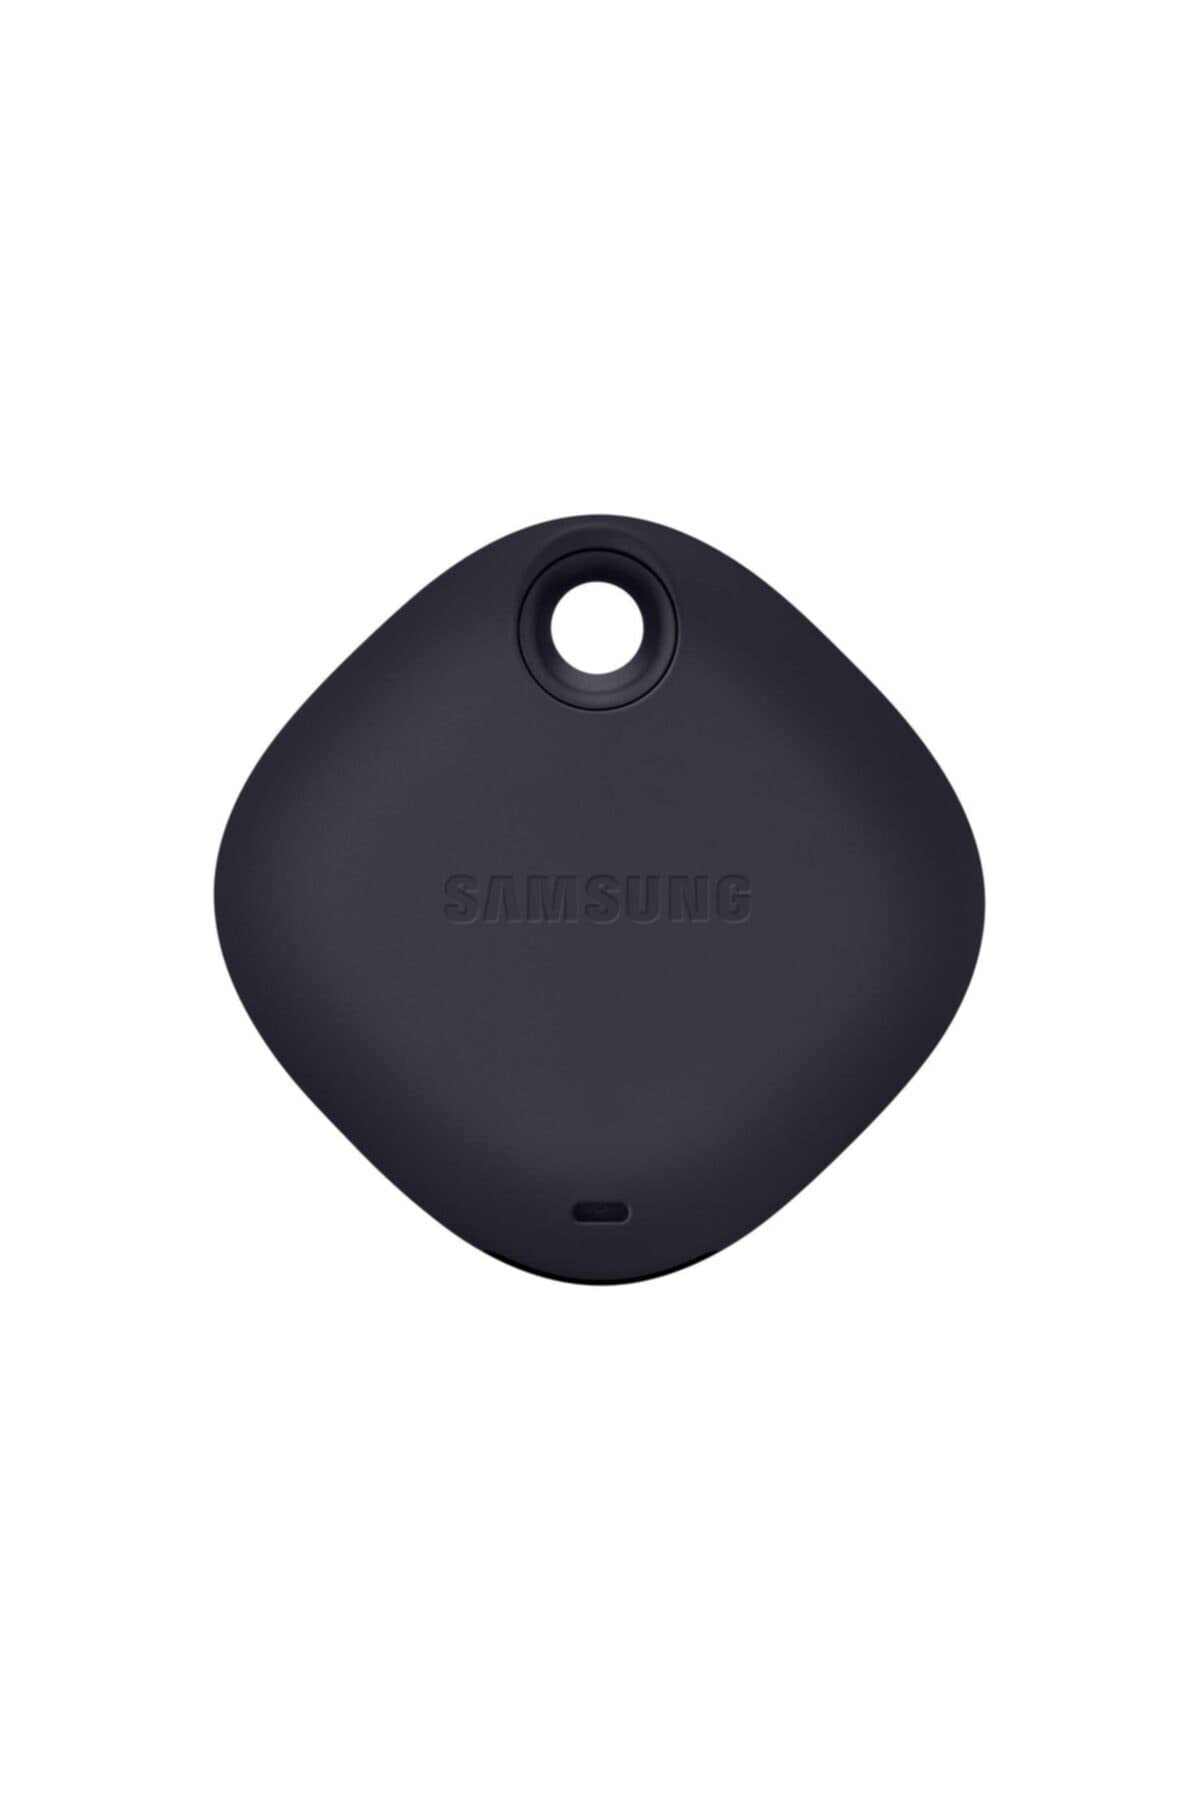 Samsung Galaxy SmartTag - Black